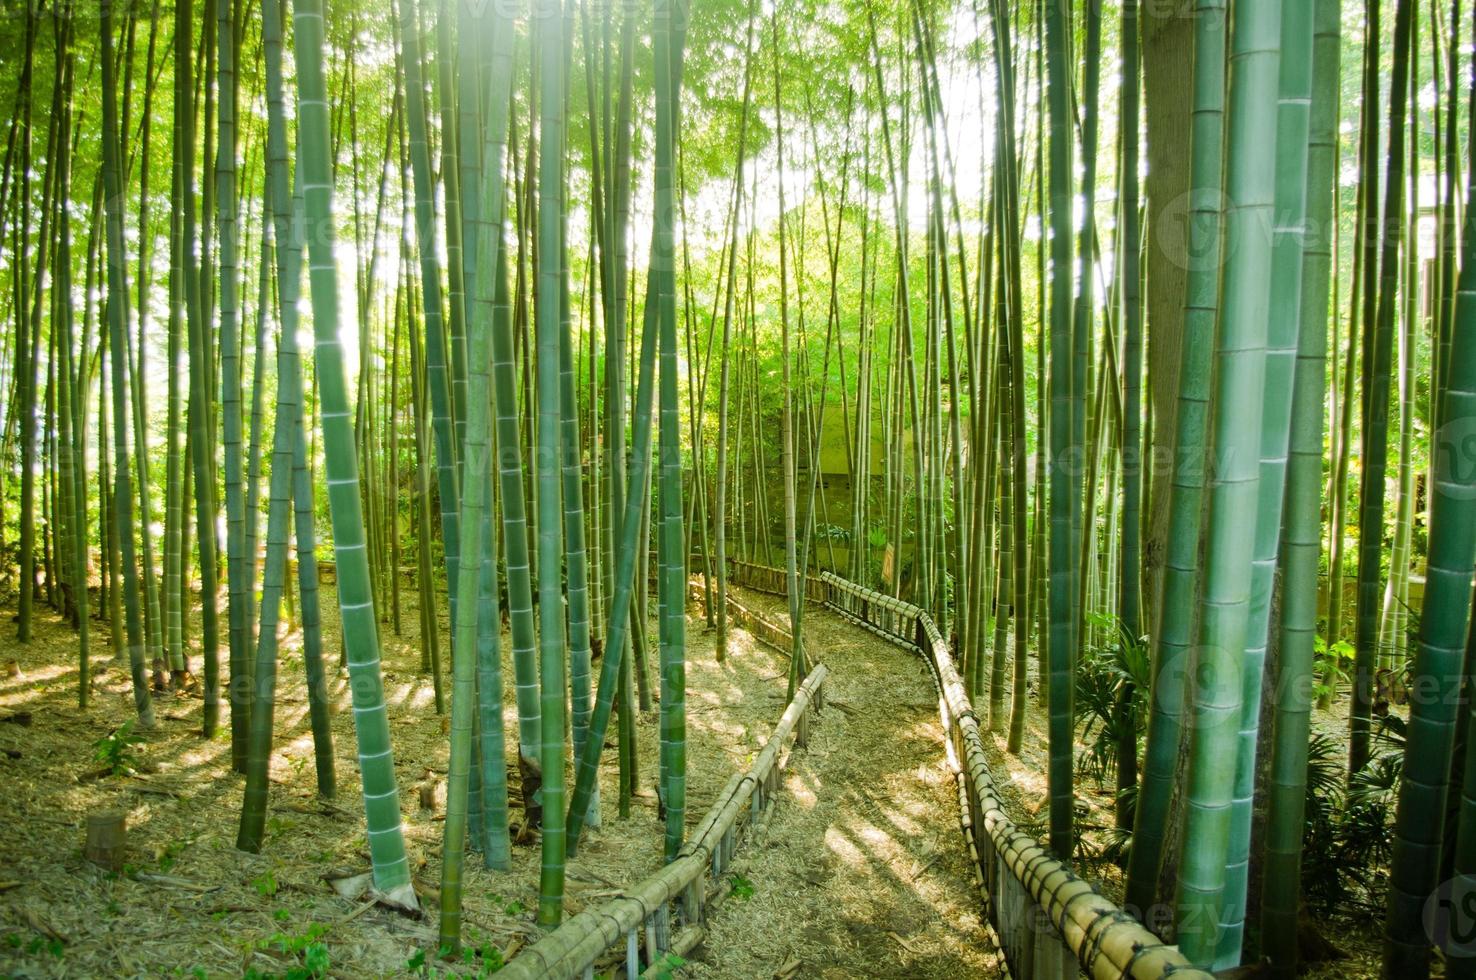 caminho da floresta de bambu foto